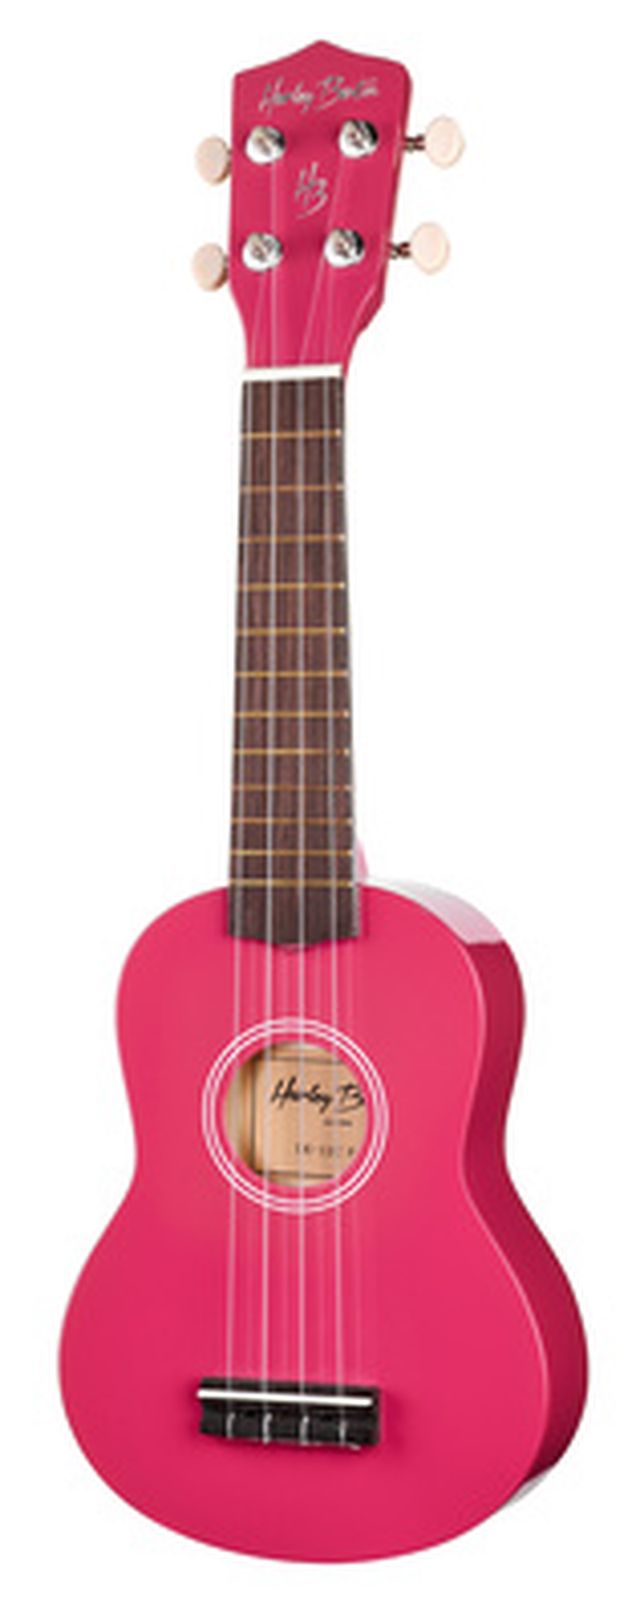 Harley Benton UK-12 Magenta Pink